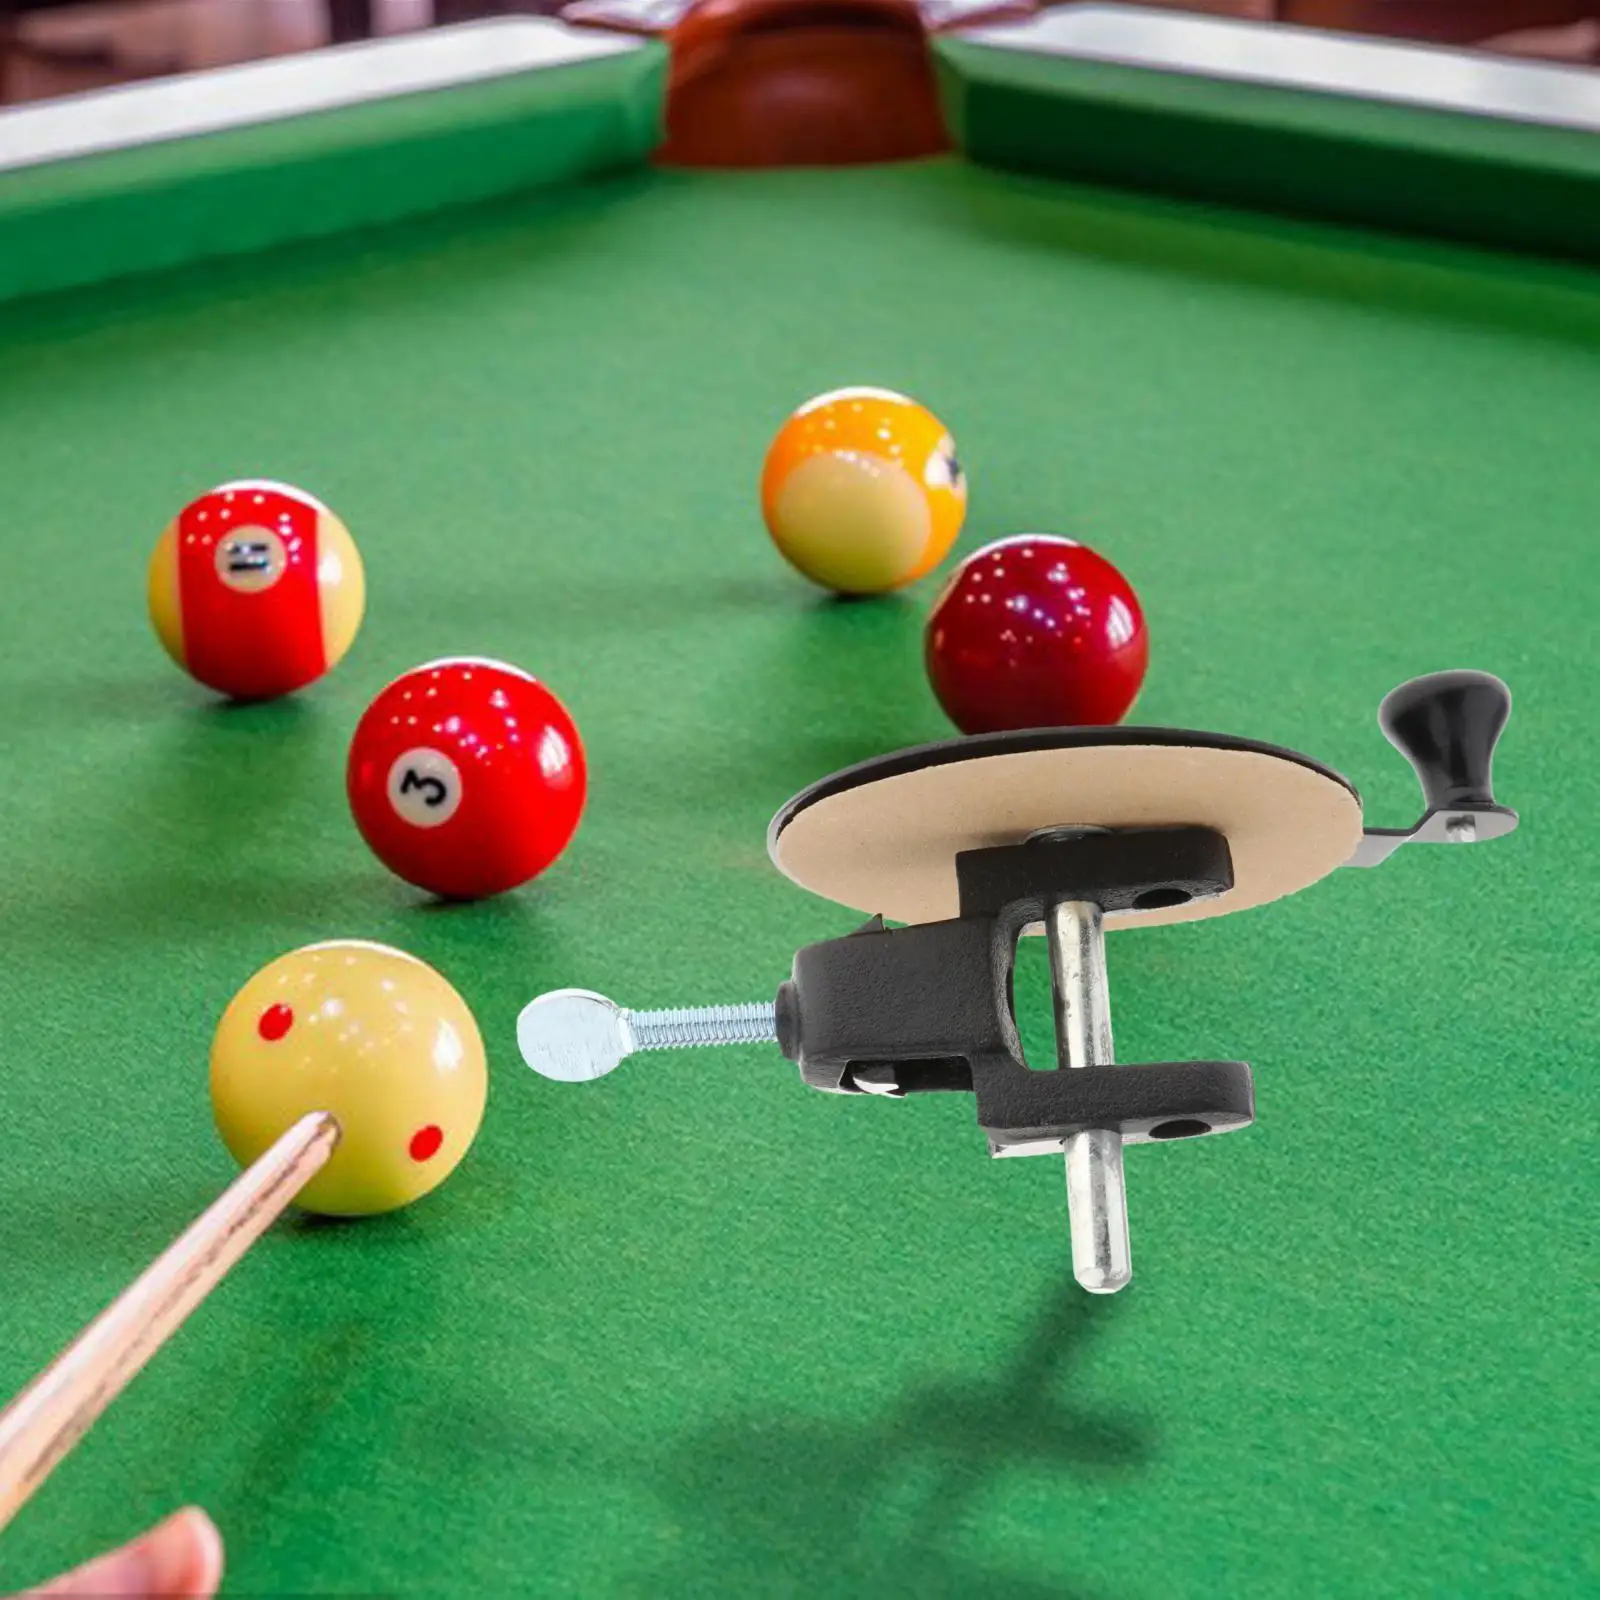 Billiard Pool Cue Tip Sander Cue Tip Shaper Tool for Repairing Daily Needs Billiards Lovers